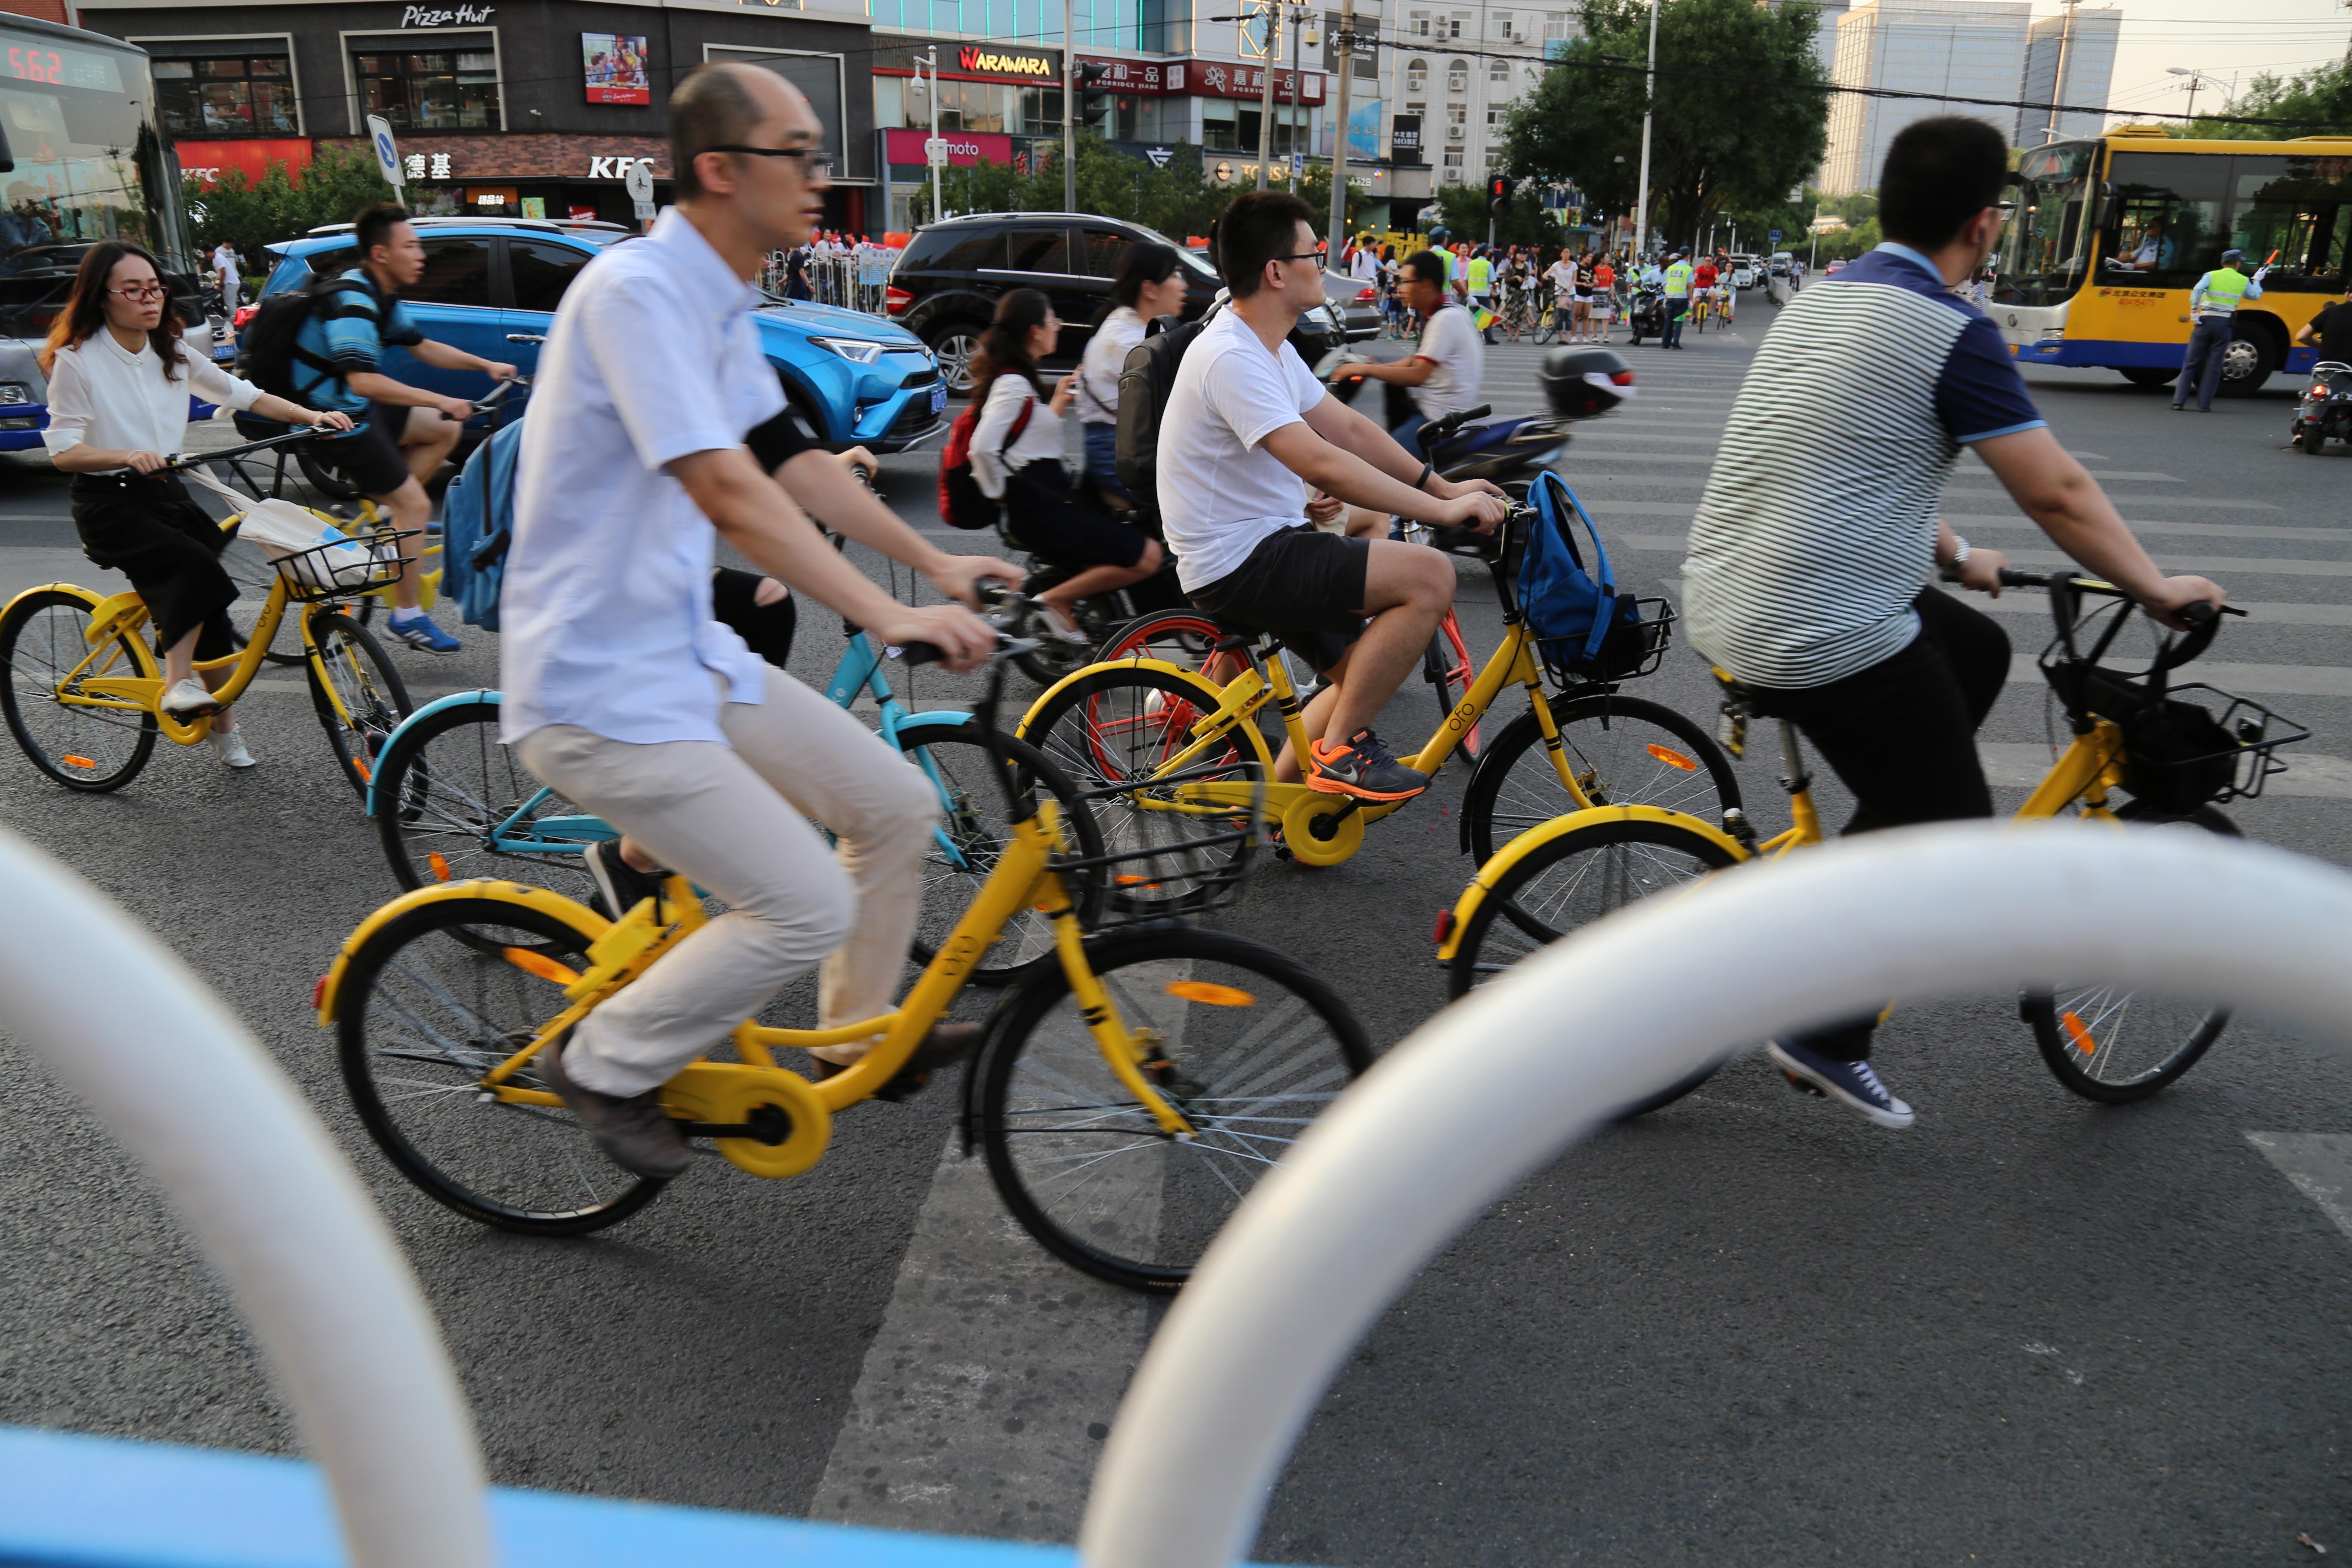 共享单车日益成为人们出行的新选择,上下班的路上,随处可见骑单车的